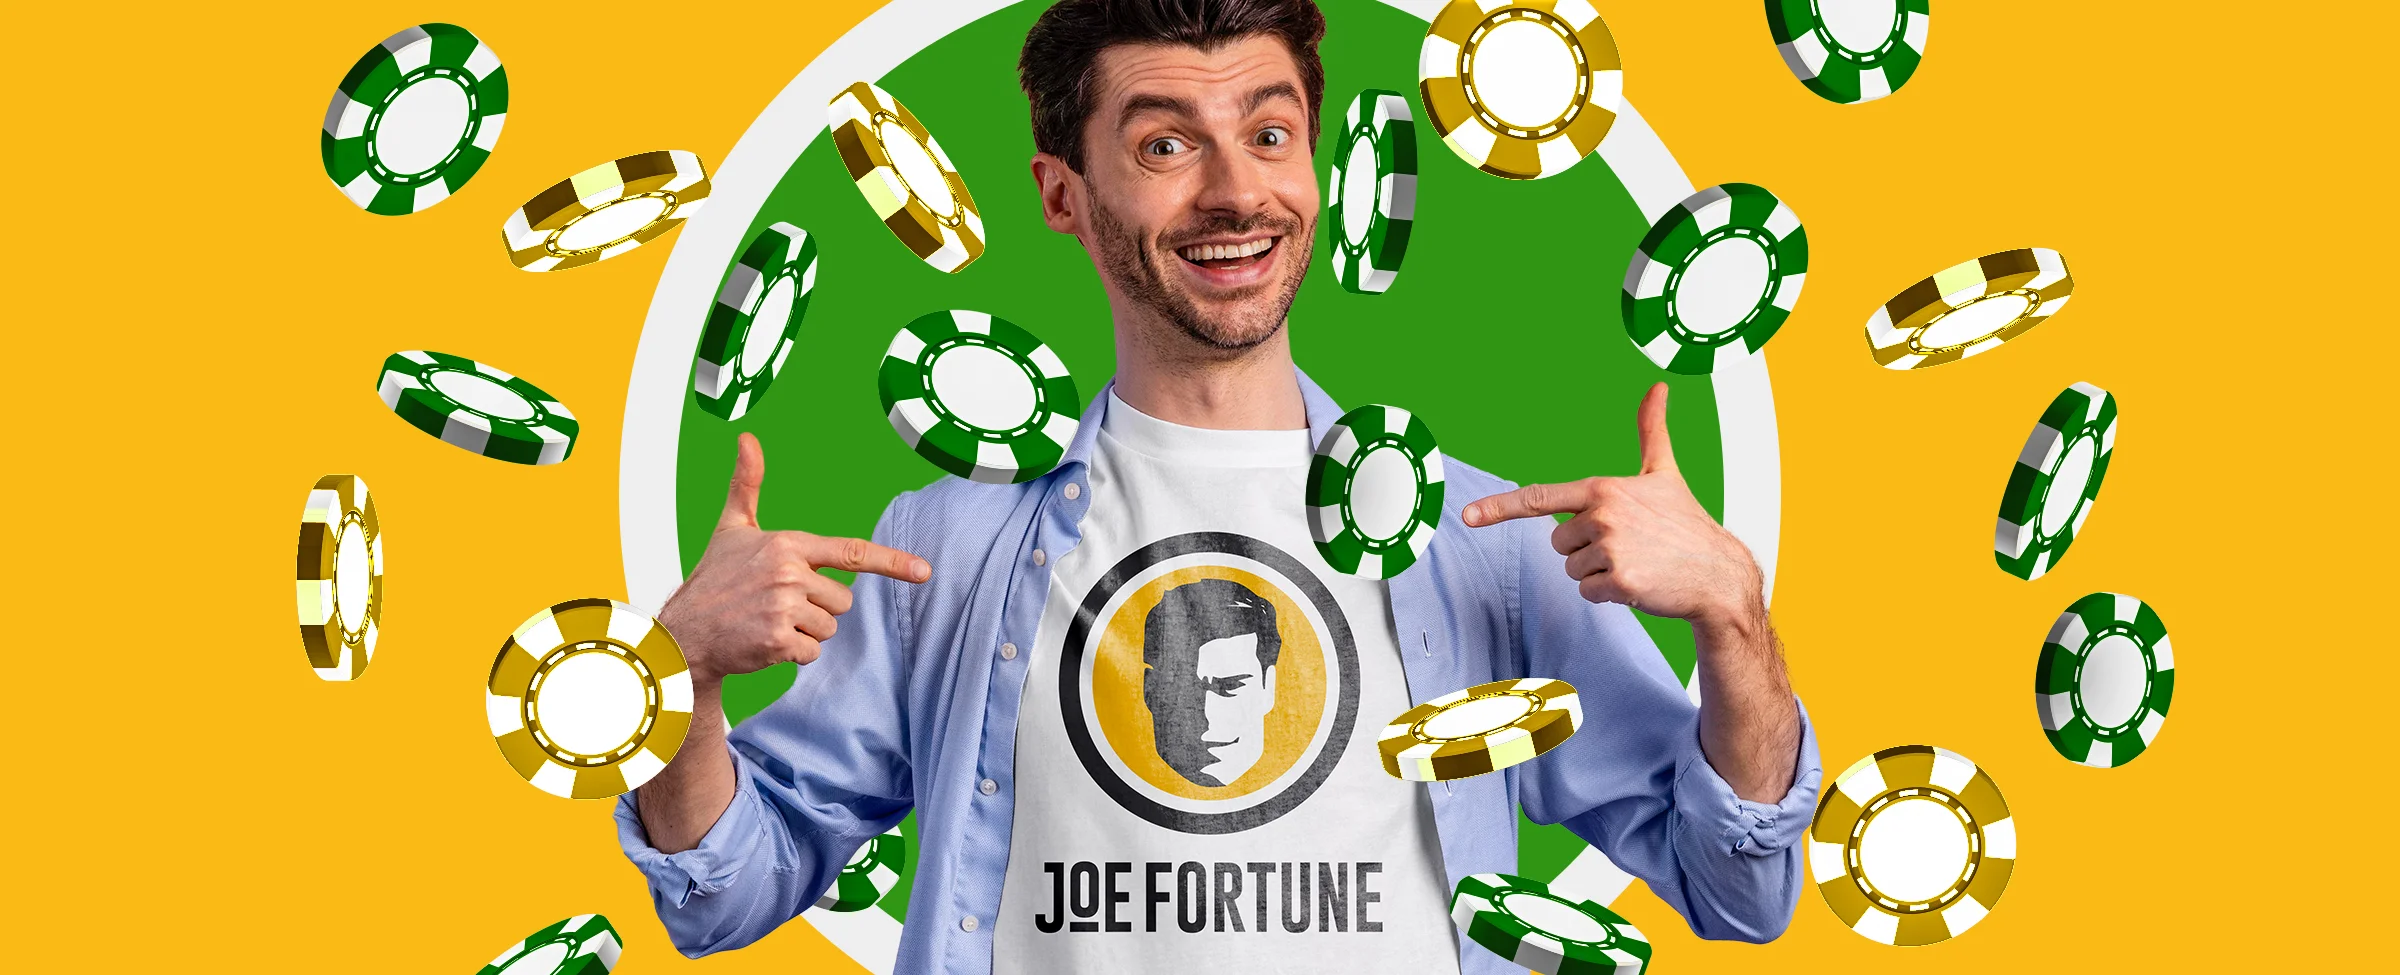 Joe Fortune Kasino Australien